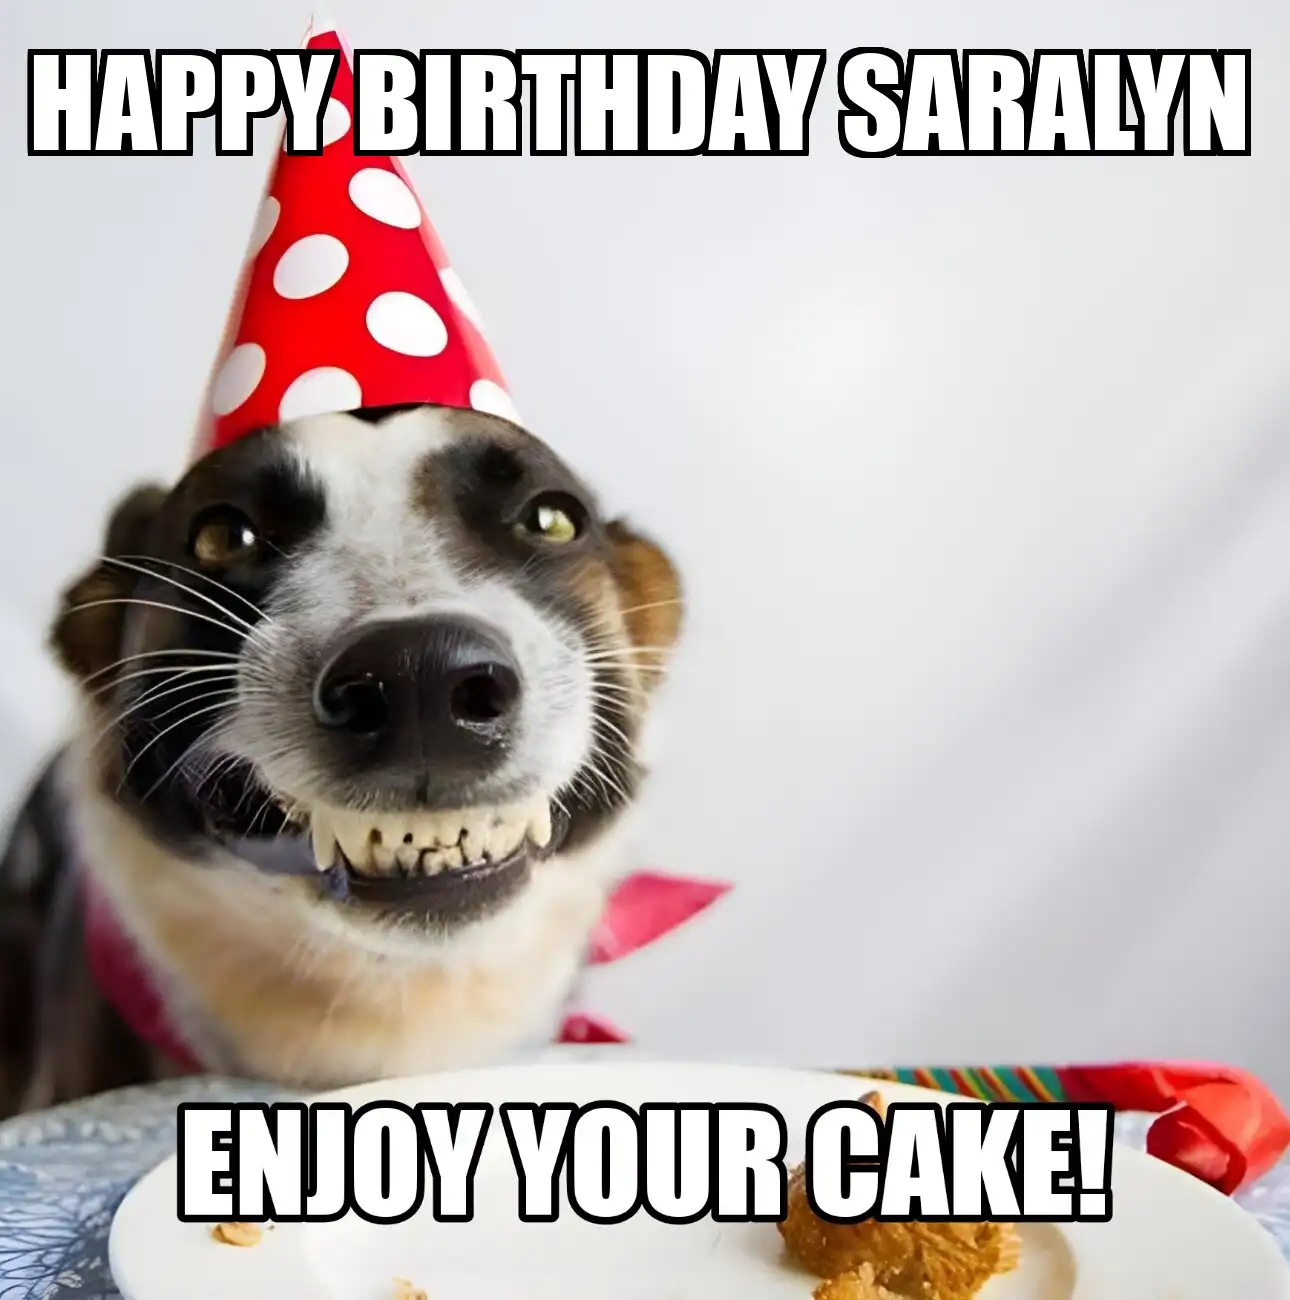 Happy Birthday Saralyn Enjoy Your Cake Dog Meme